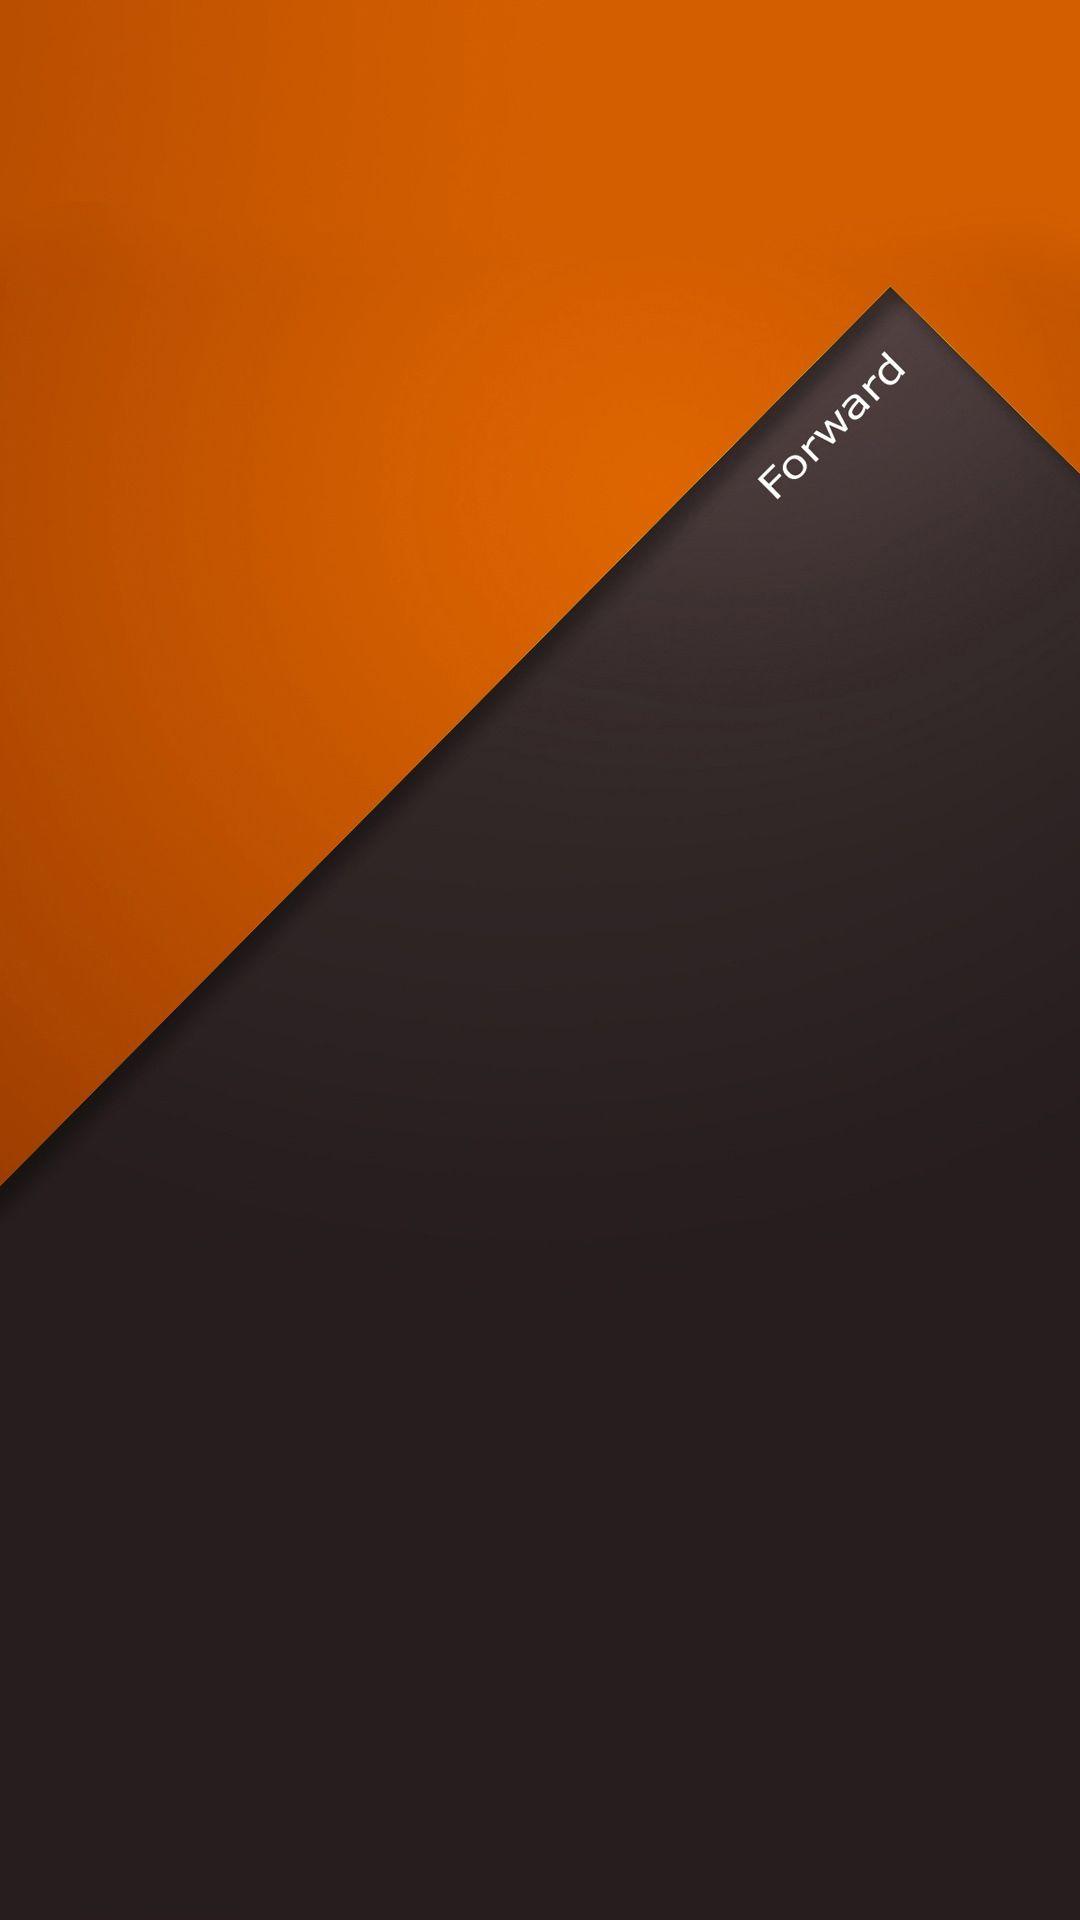 1080x1920 Tải xuống miễn phí AQUOS Phone XX 106SH Hình nền màu cam về phía trước